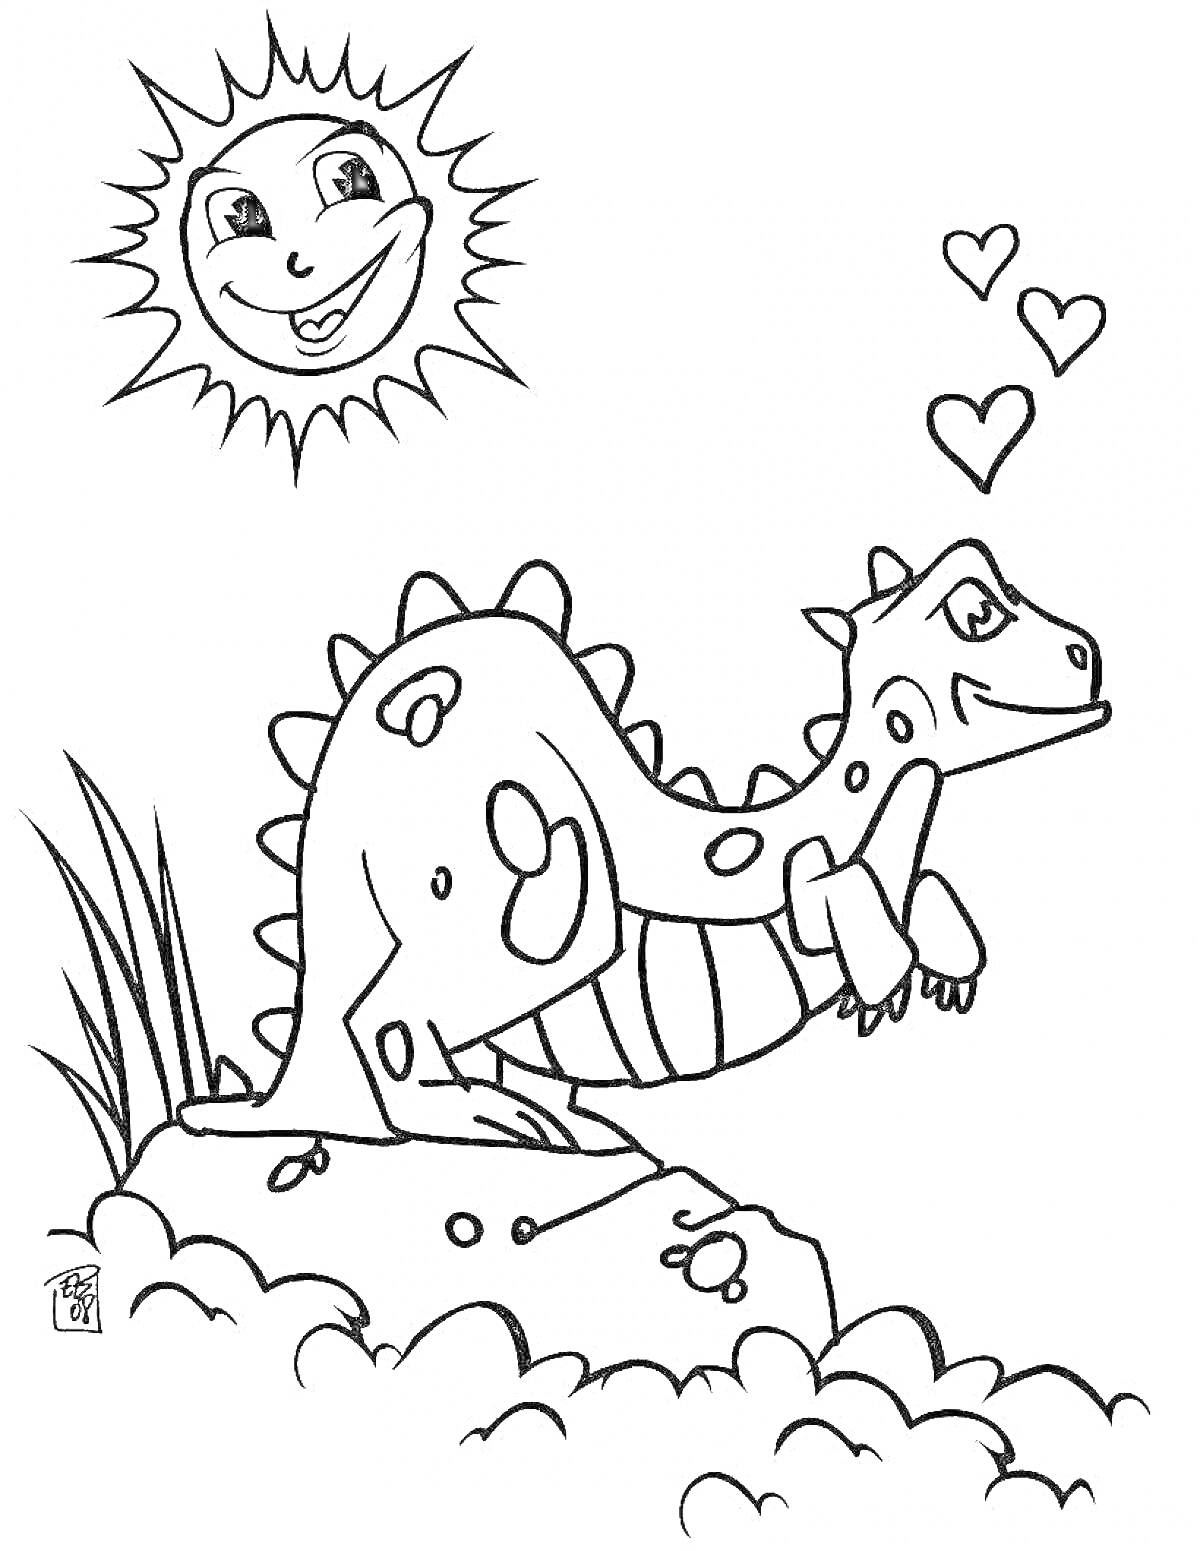 Динозаврик на камне с улыбающимся солнцем и сердечками